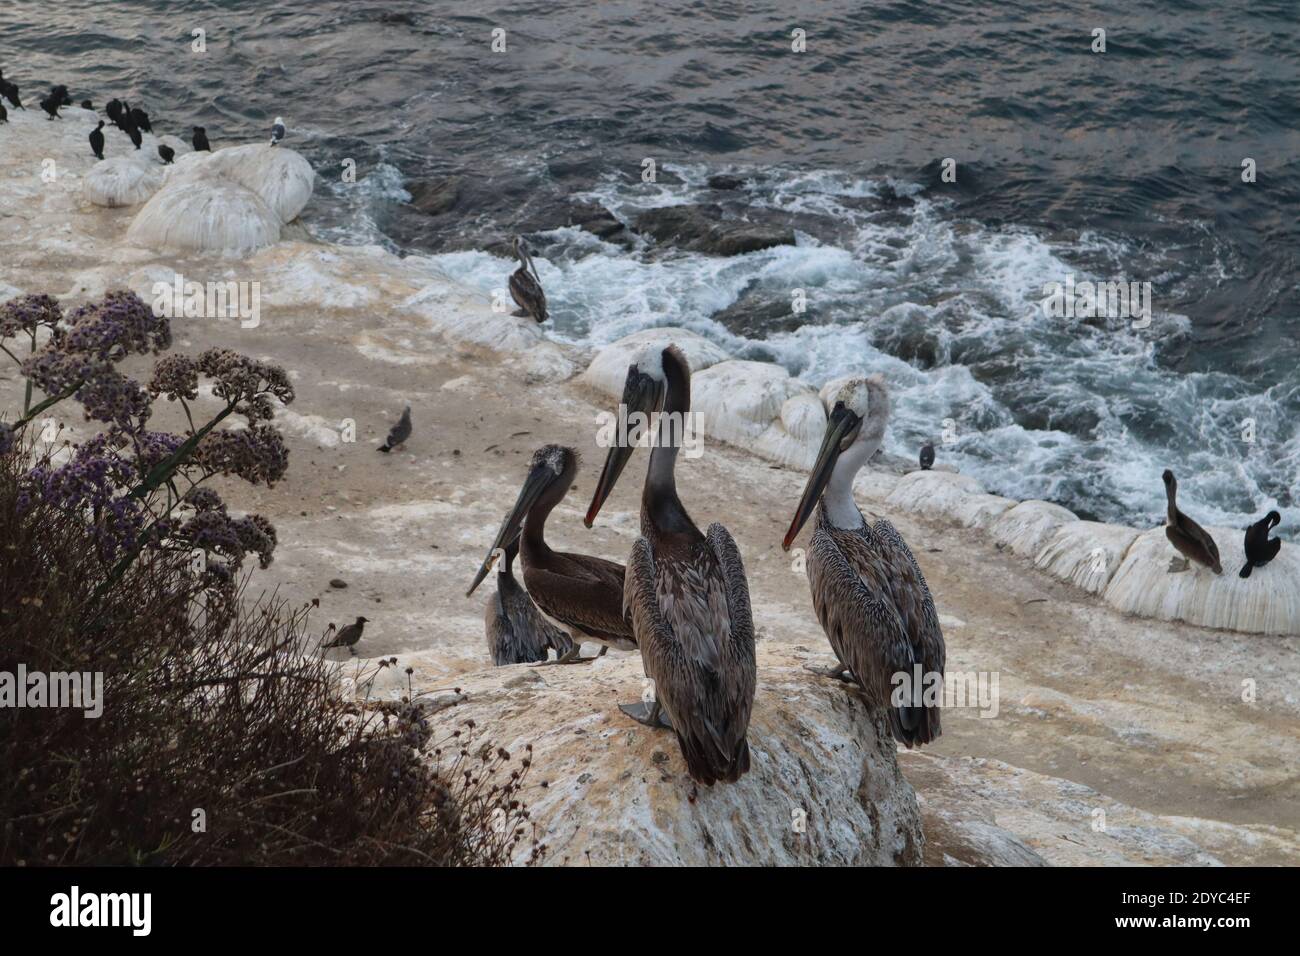 The pelicans on sea cave cove of La Jolla, California Stock Photo